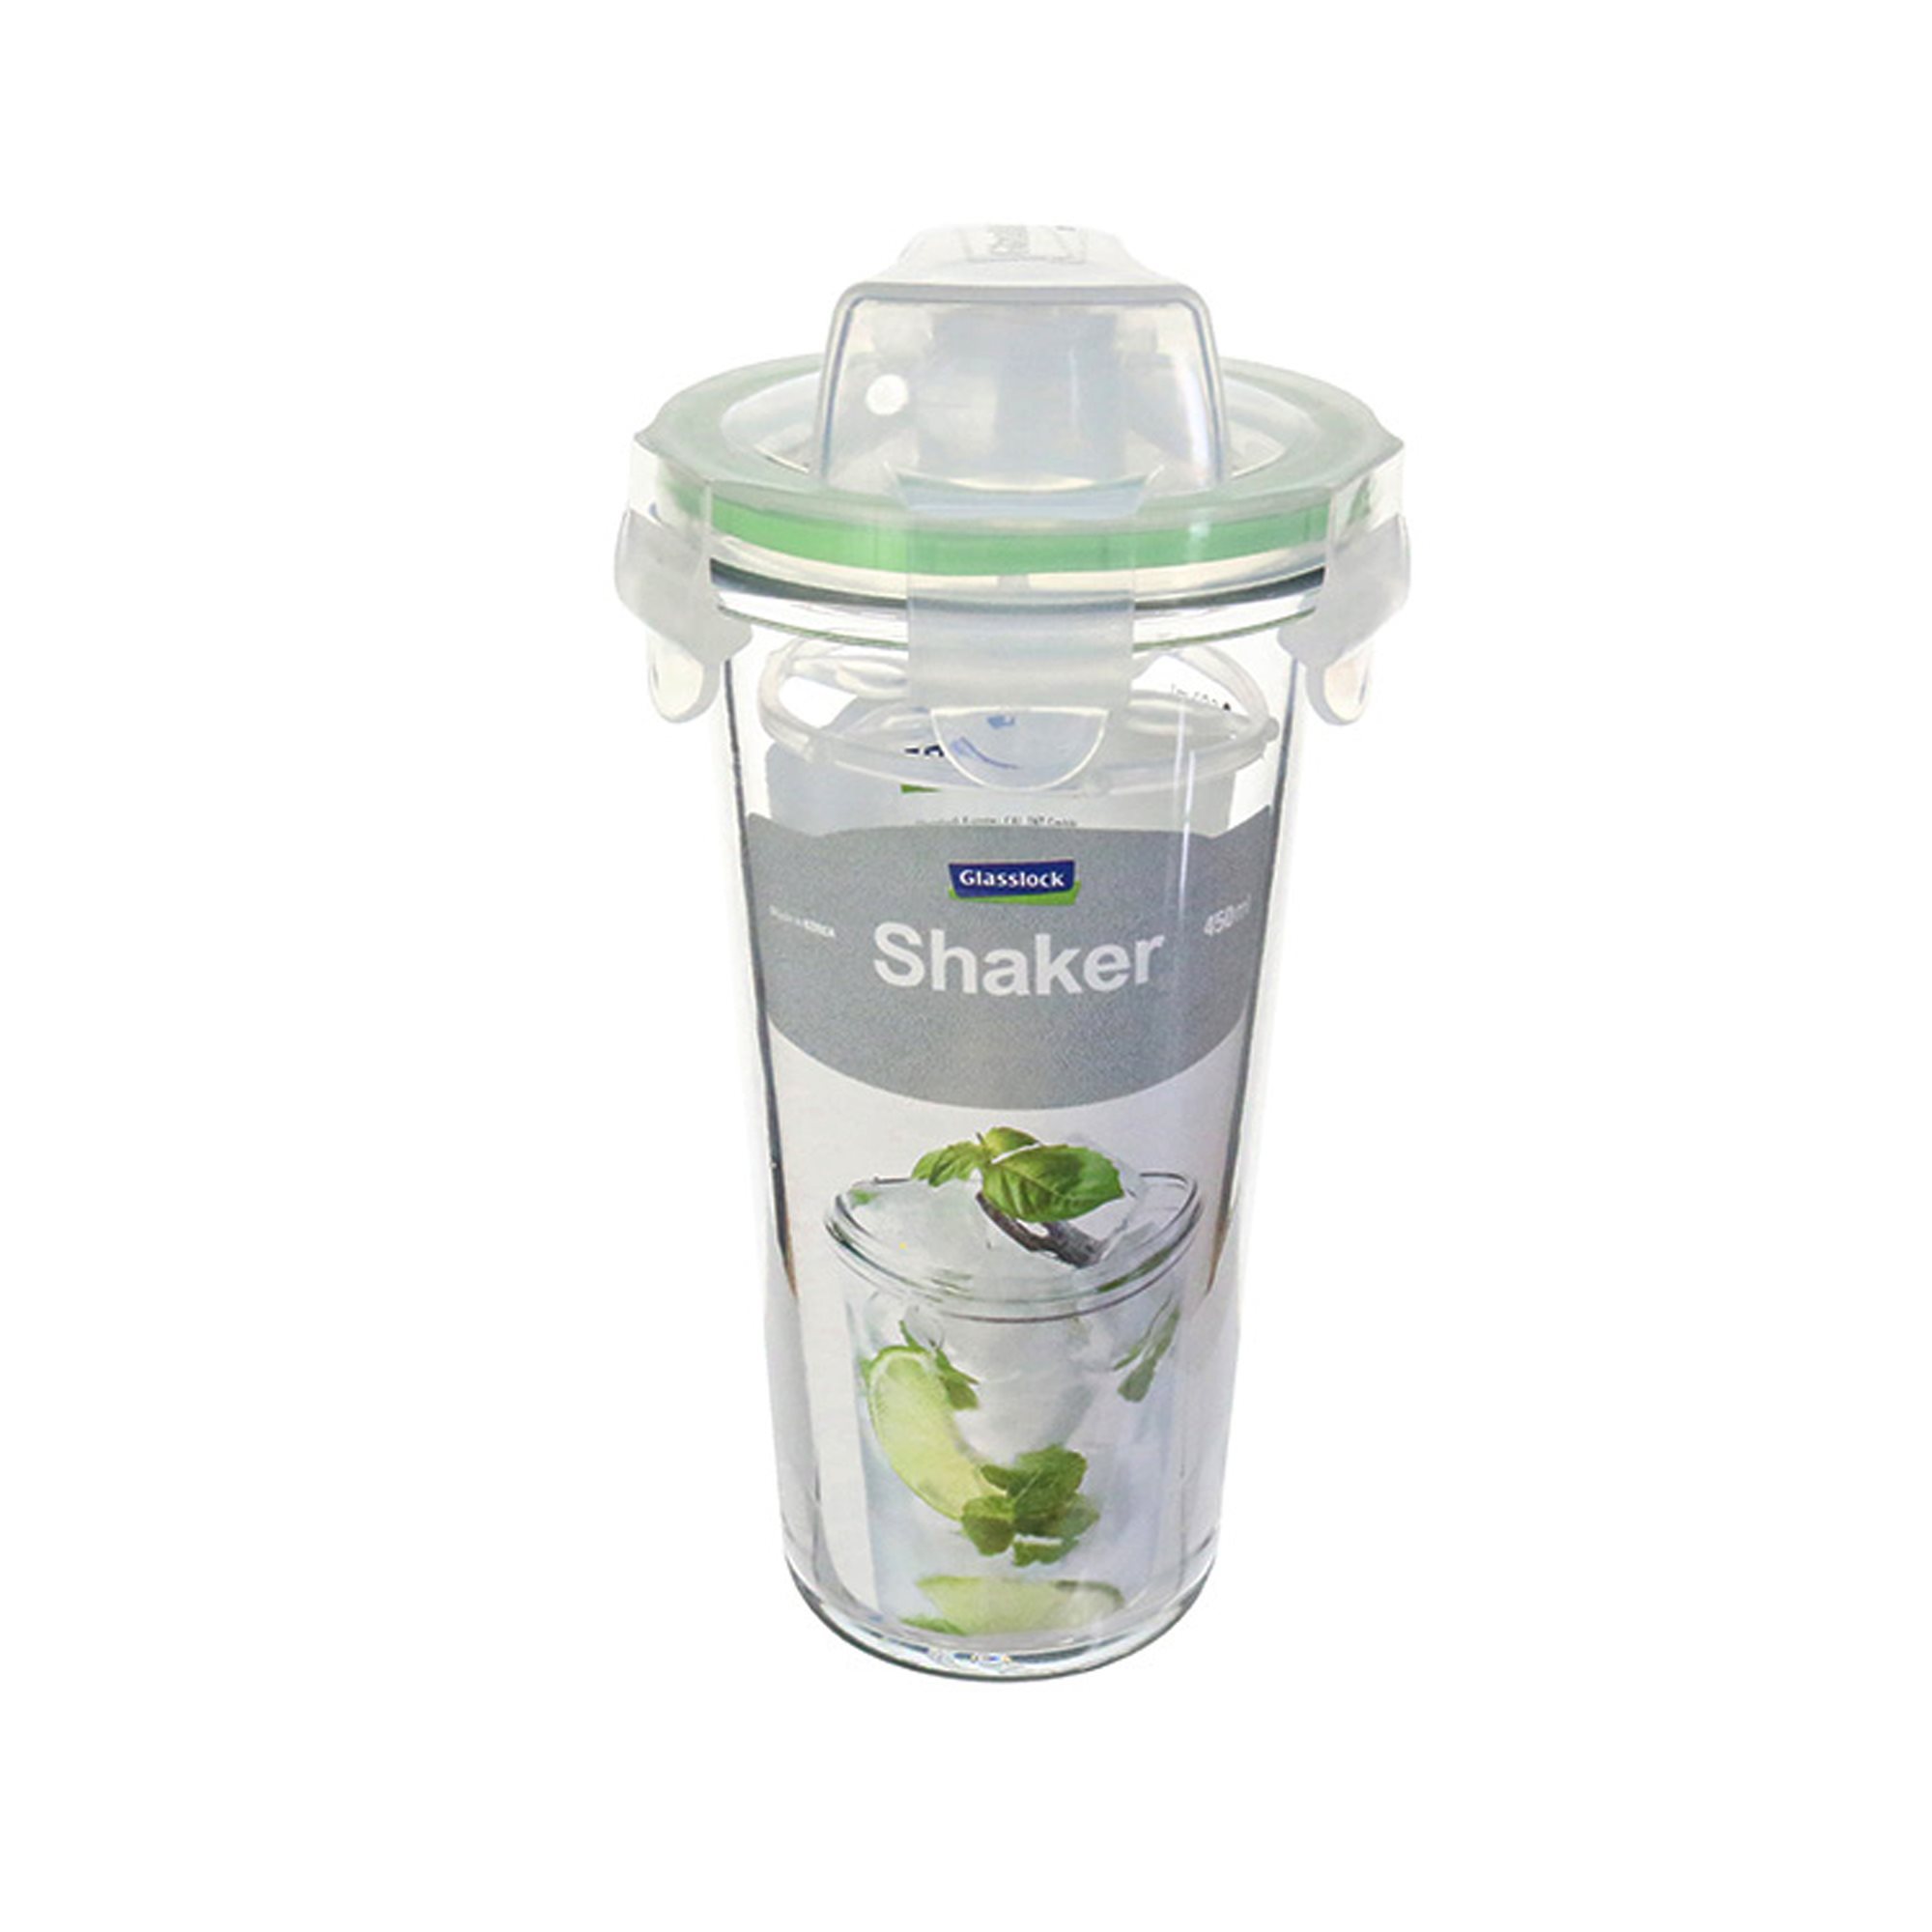 Glass shaker, 450 ml - Glasslock | KitchenShop